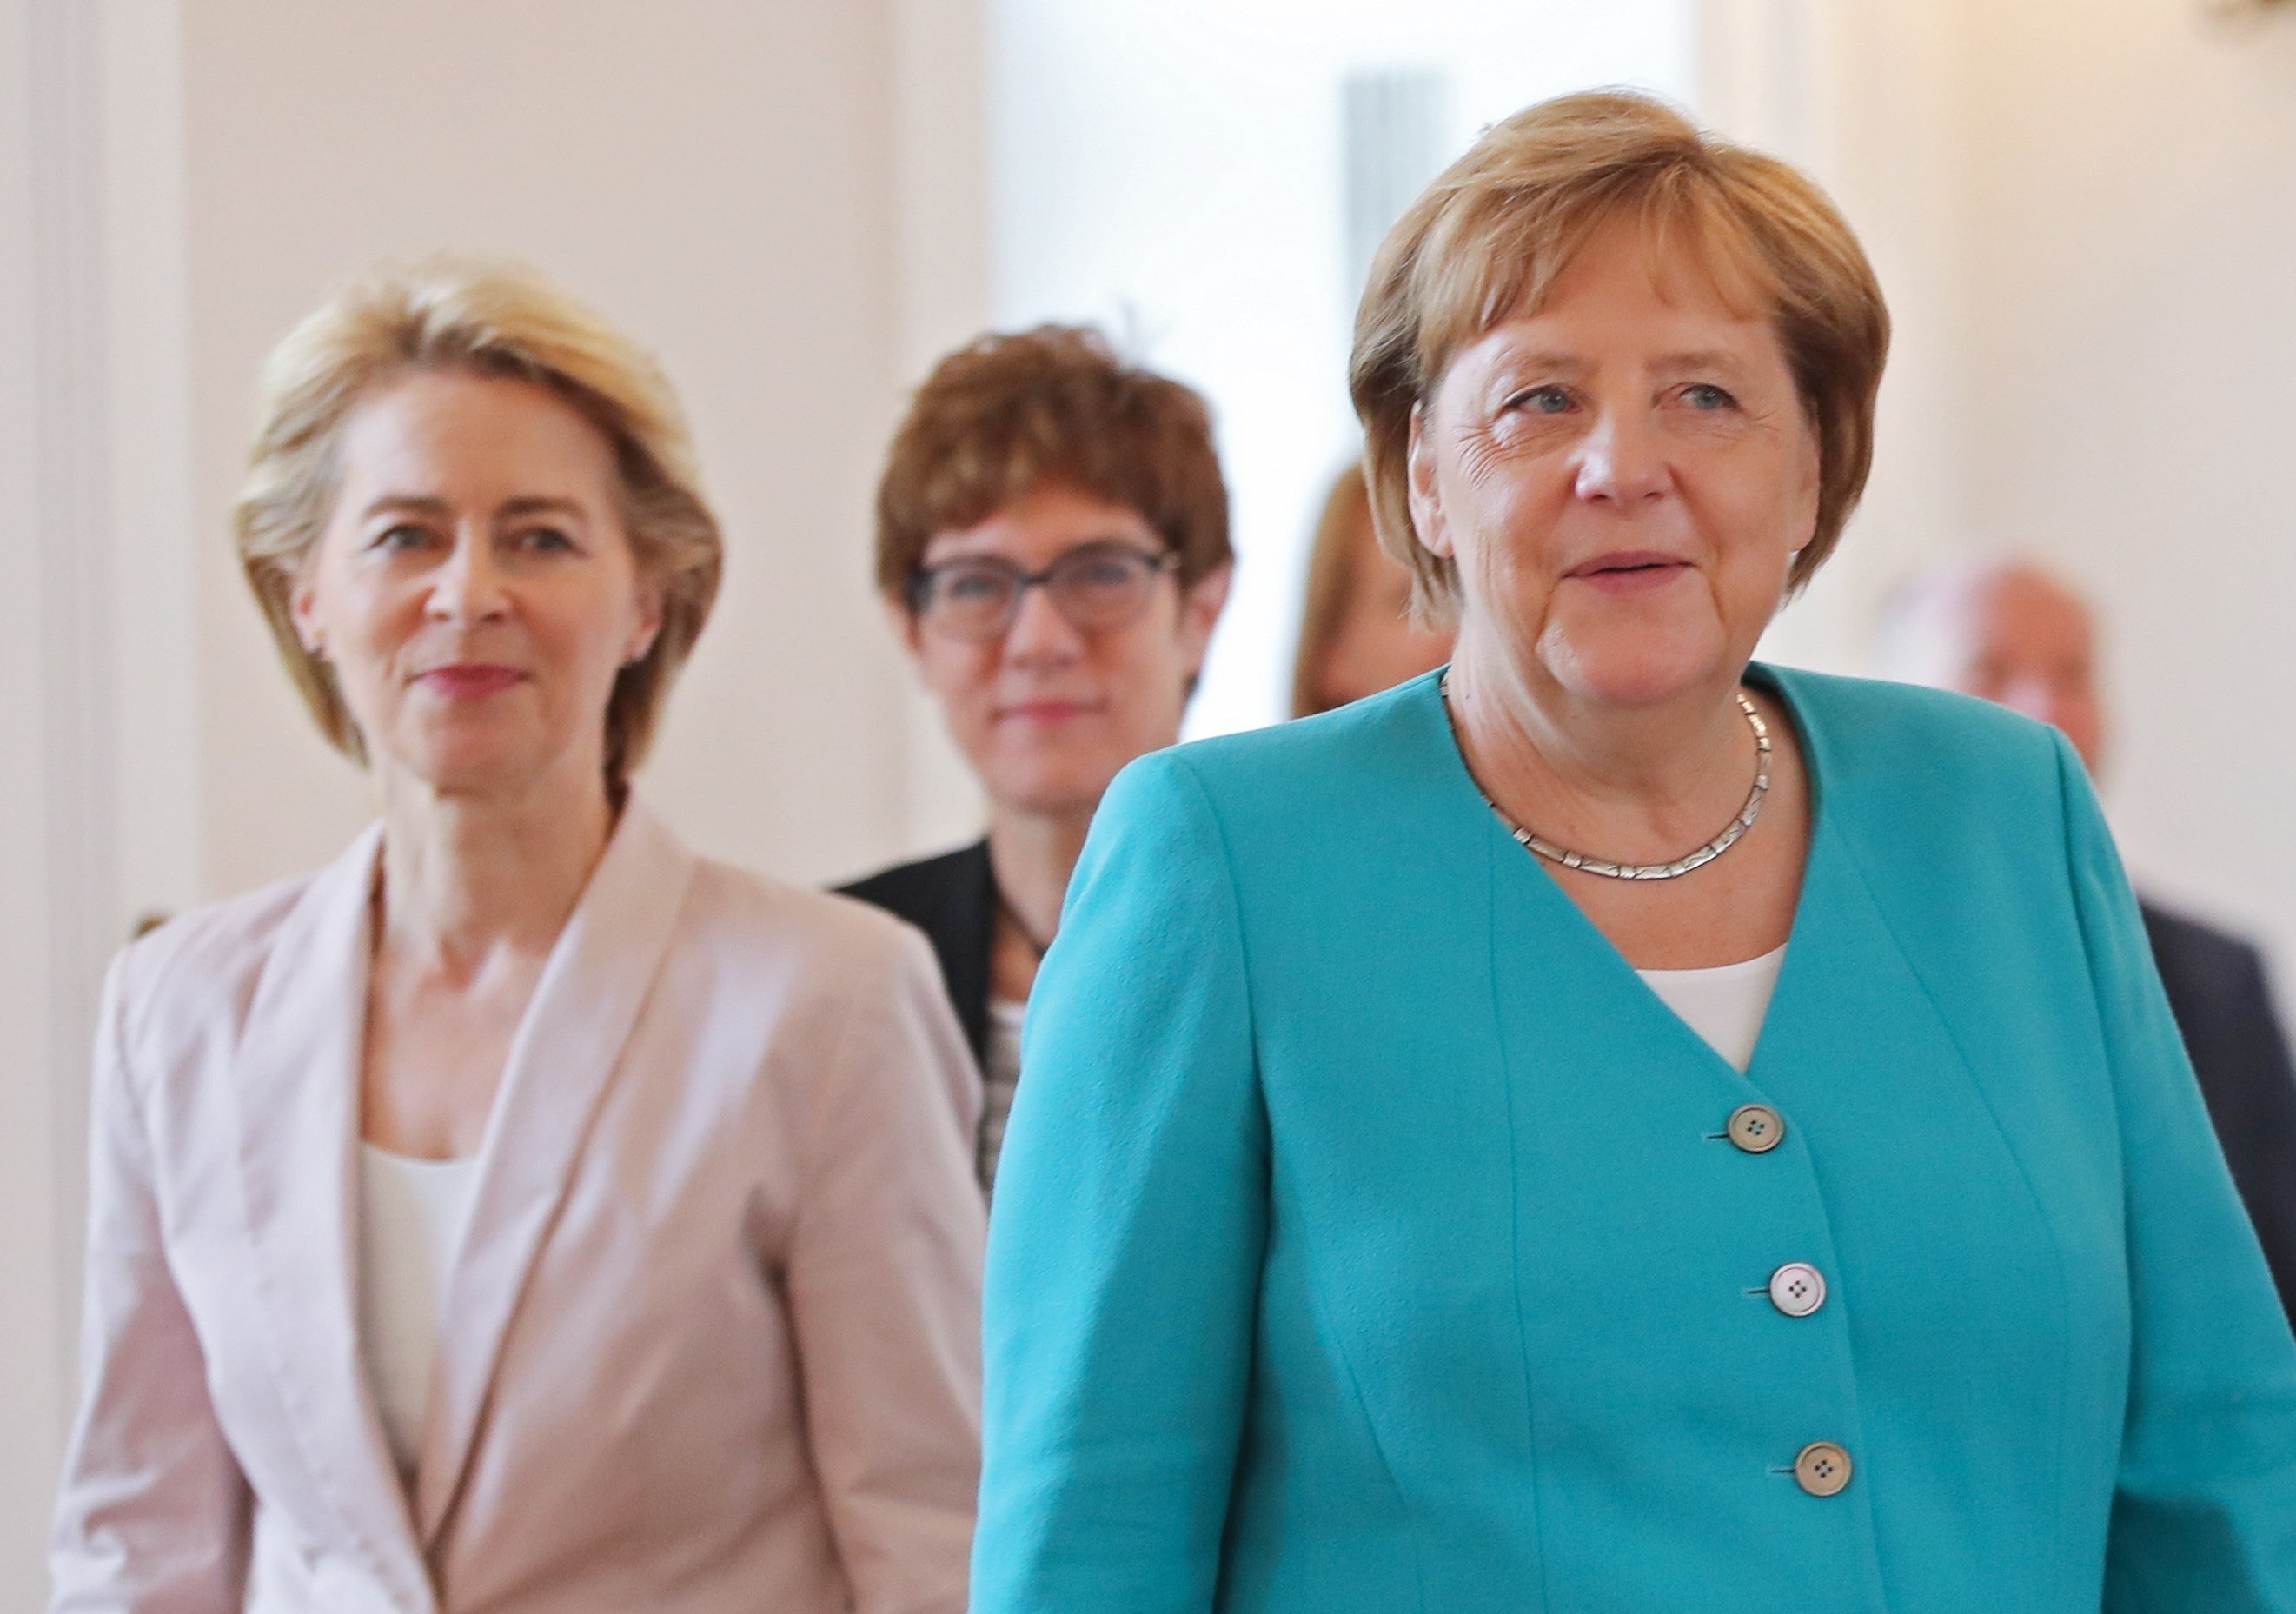 Els esforços de Merkel per deixar-ho tot lligat i ben lligat